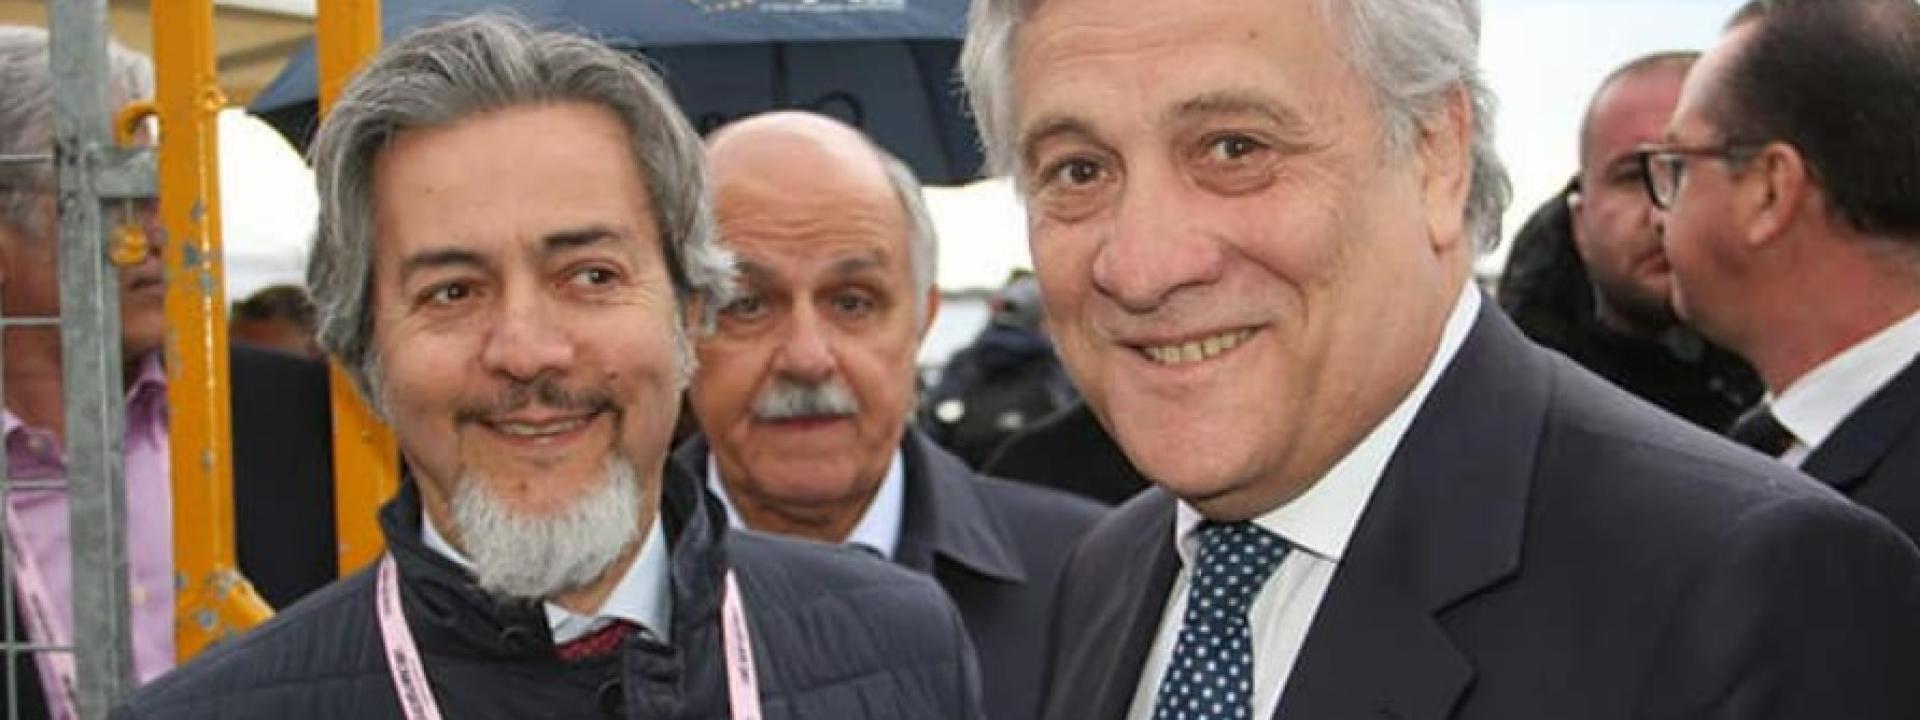 Marche - Tajani ad Ancona per sostenere Silvetti, Battistoni: 